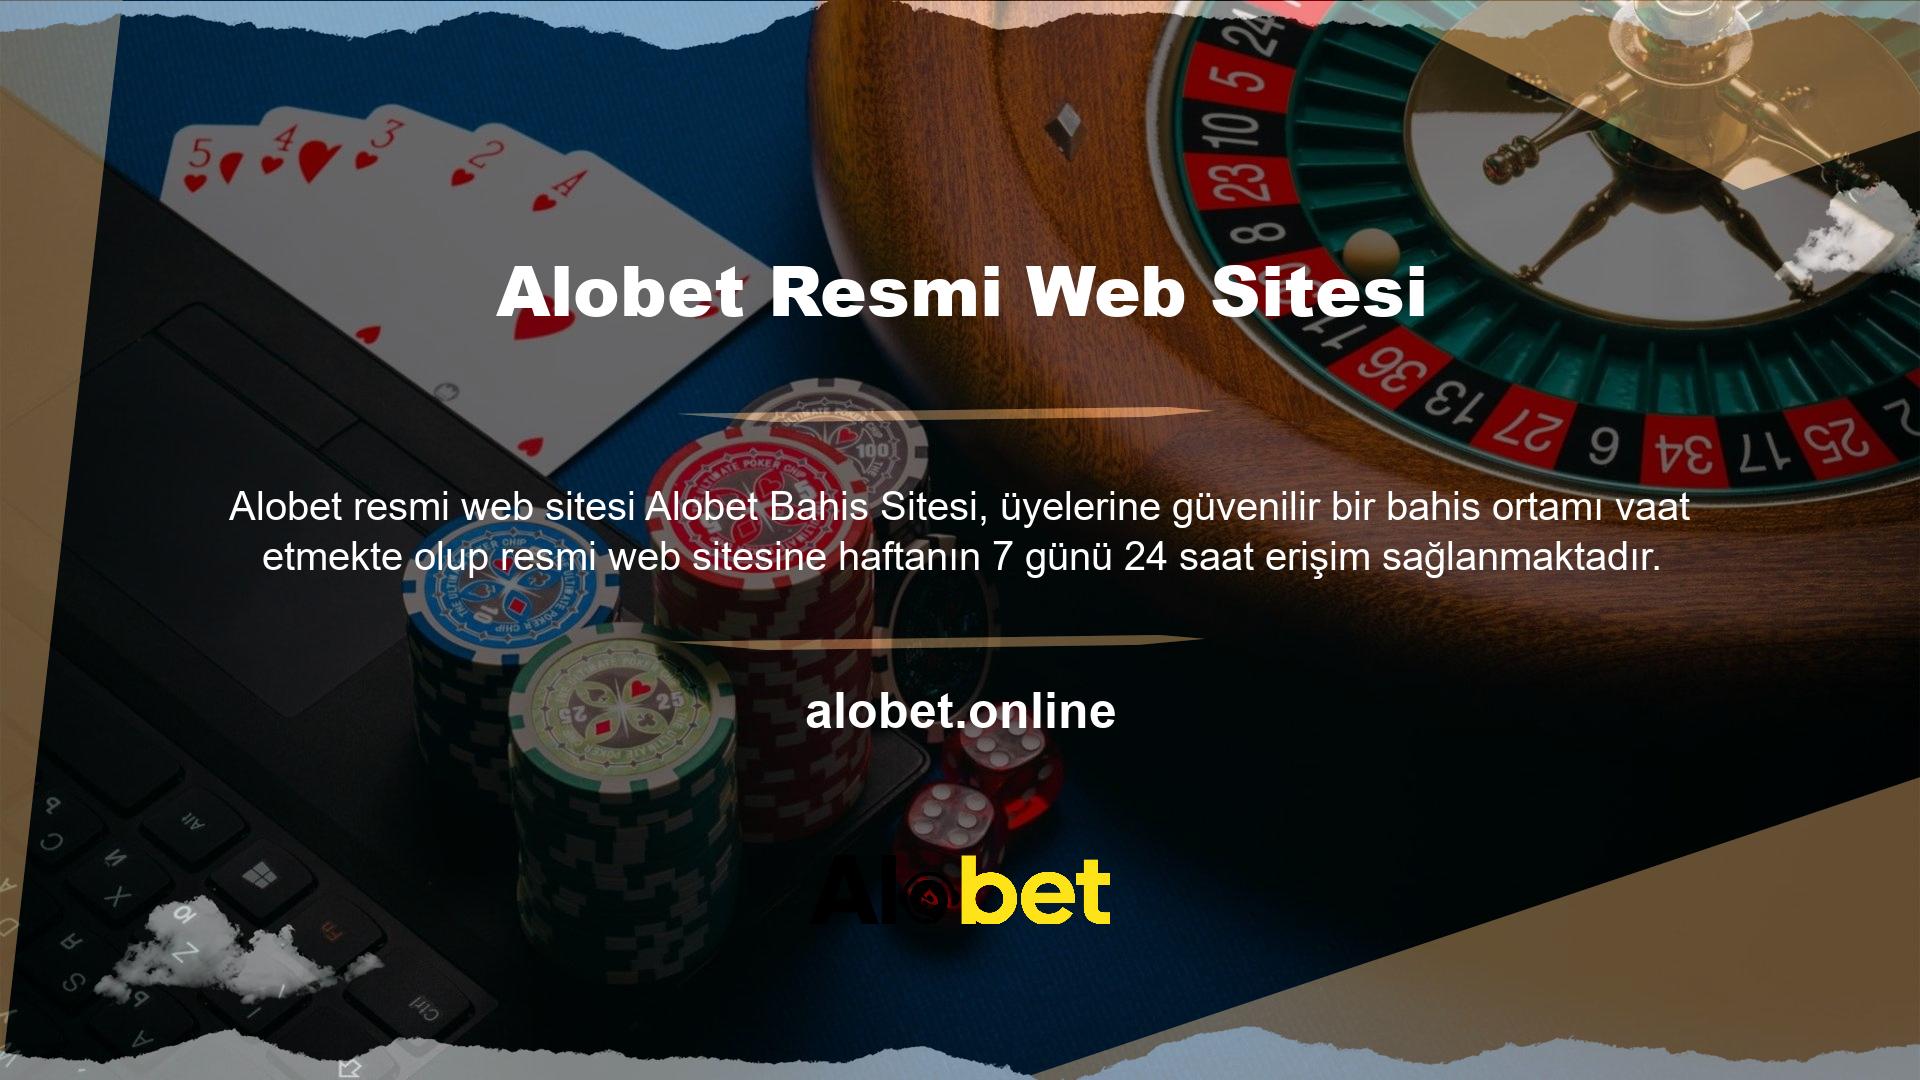 Alobet resmi internet sitesi bilgilerini ziyaret ettiğinizde internet sitesinin sosyal medya hesaplarından faydalanabilirsiniz